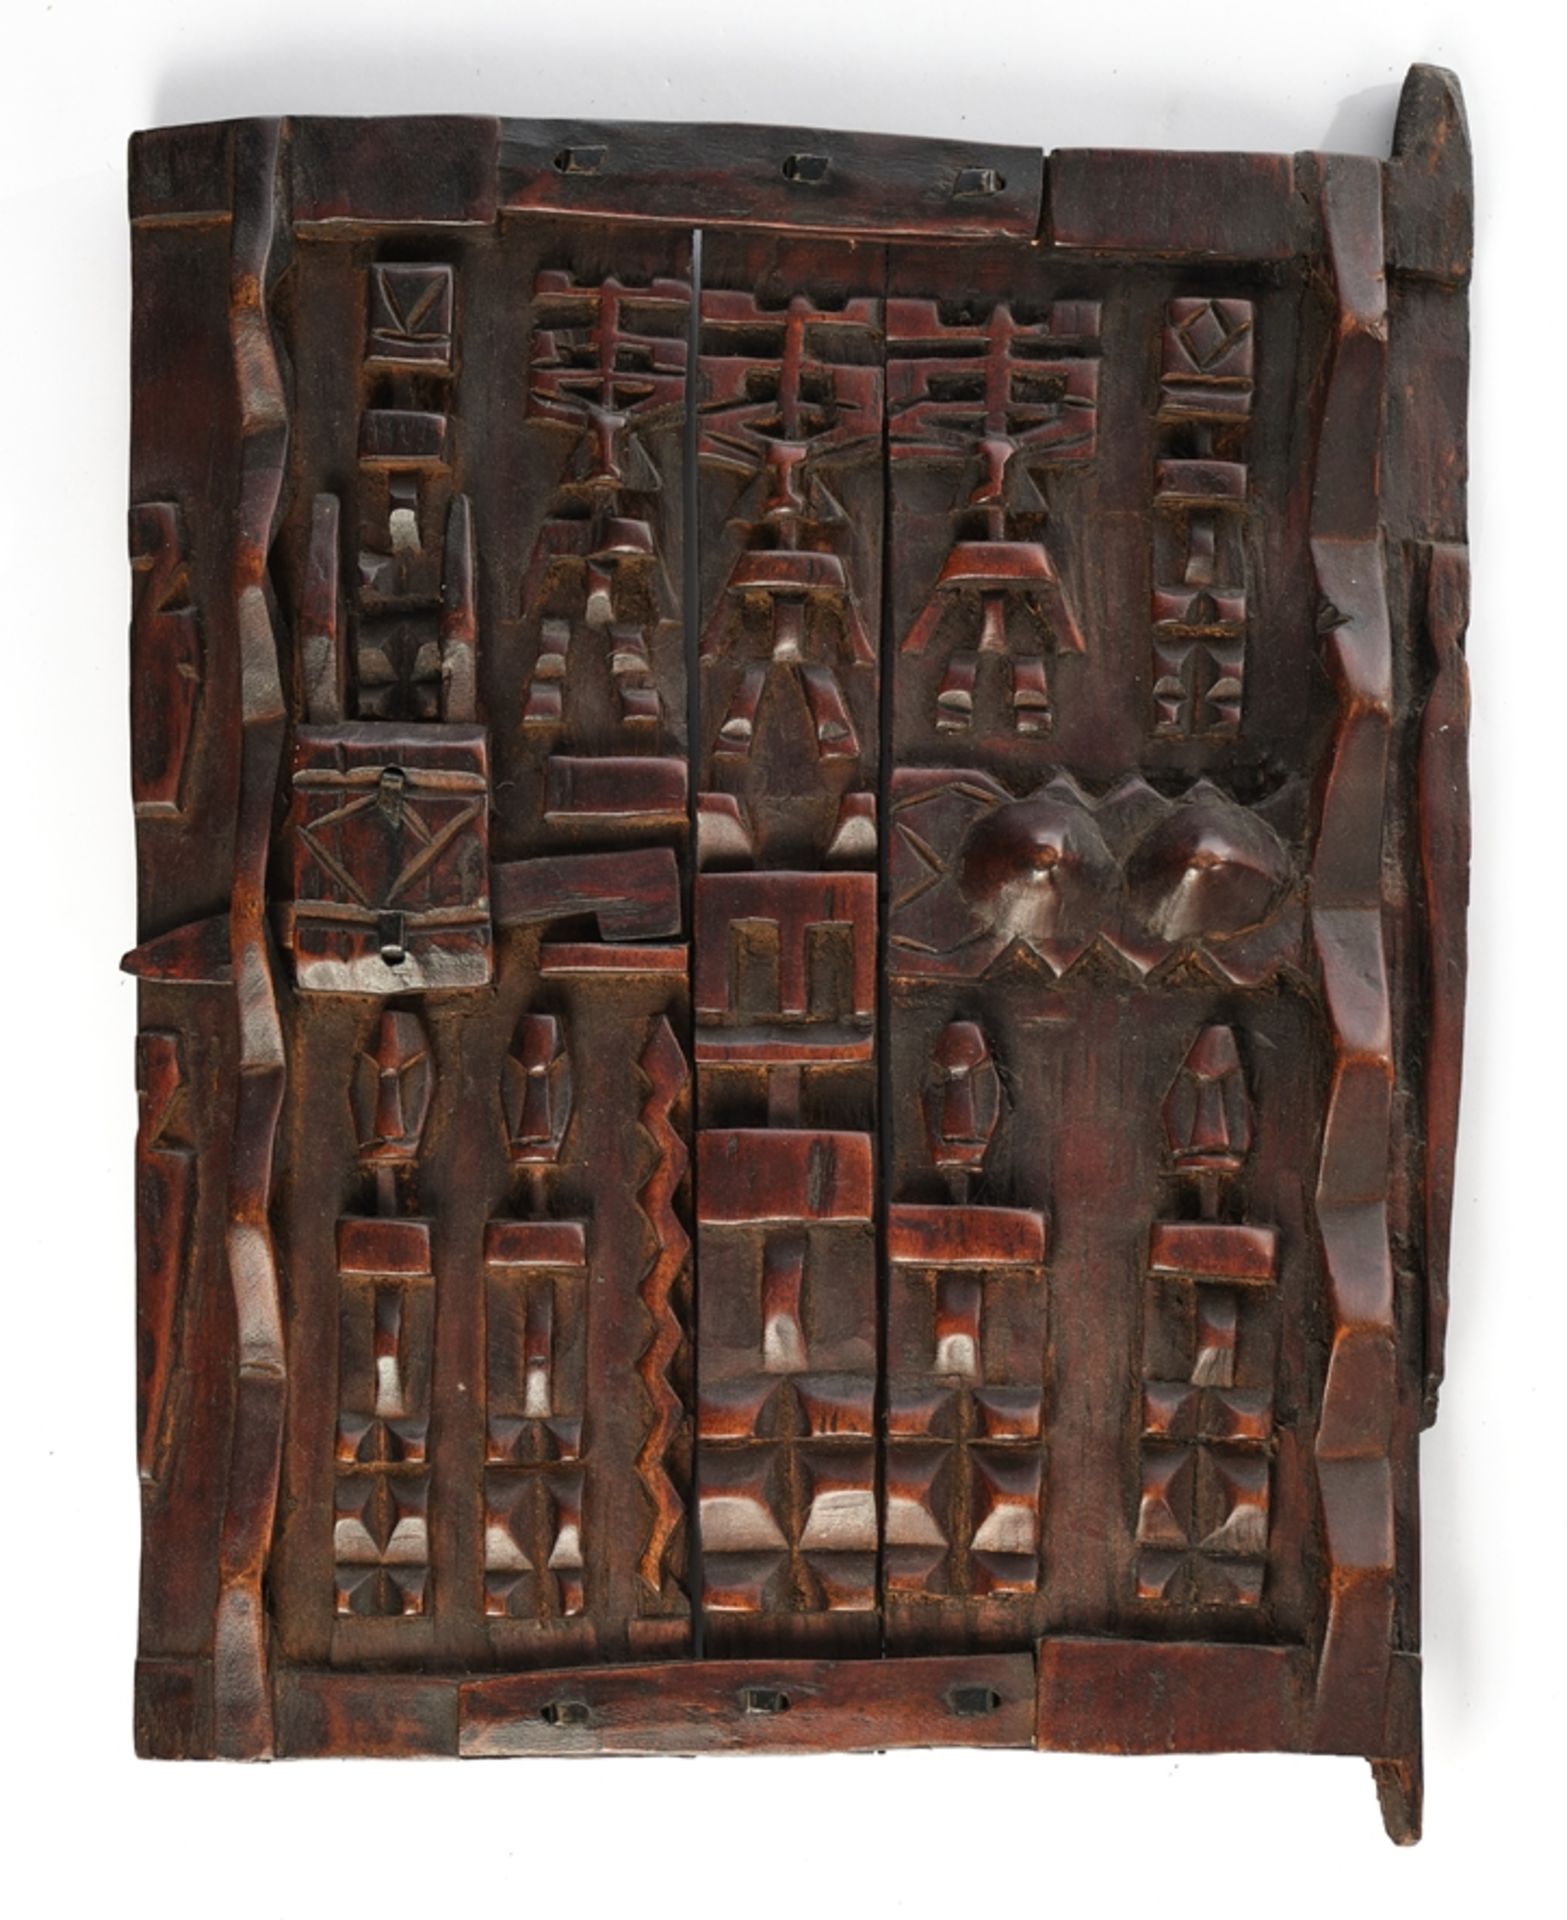 Holztür, Dogon, Mali, Afrika, vielfigurig beschnitzt, 52 x 39.5 cm.